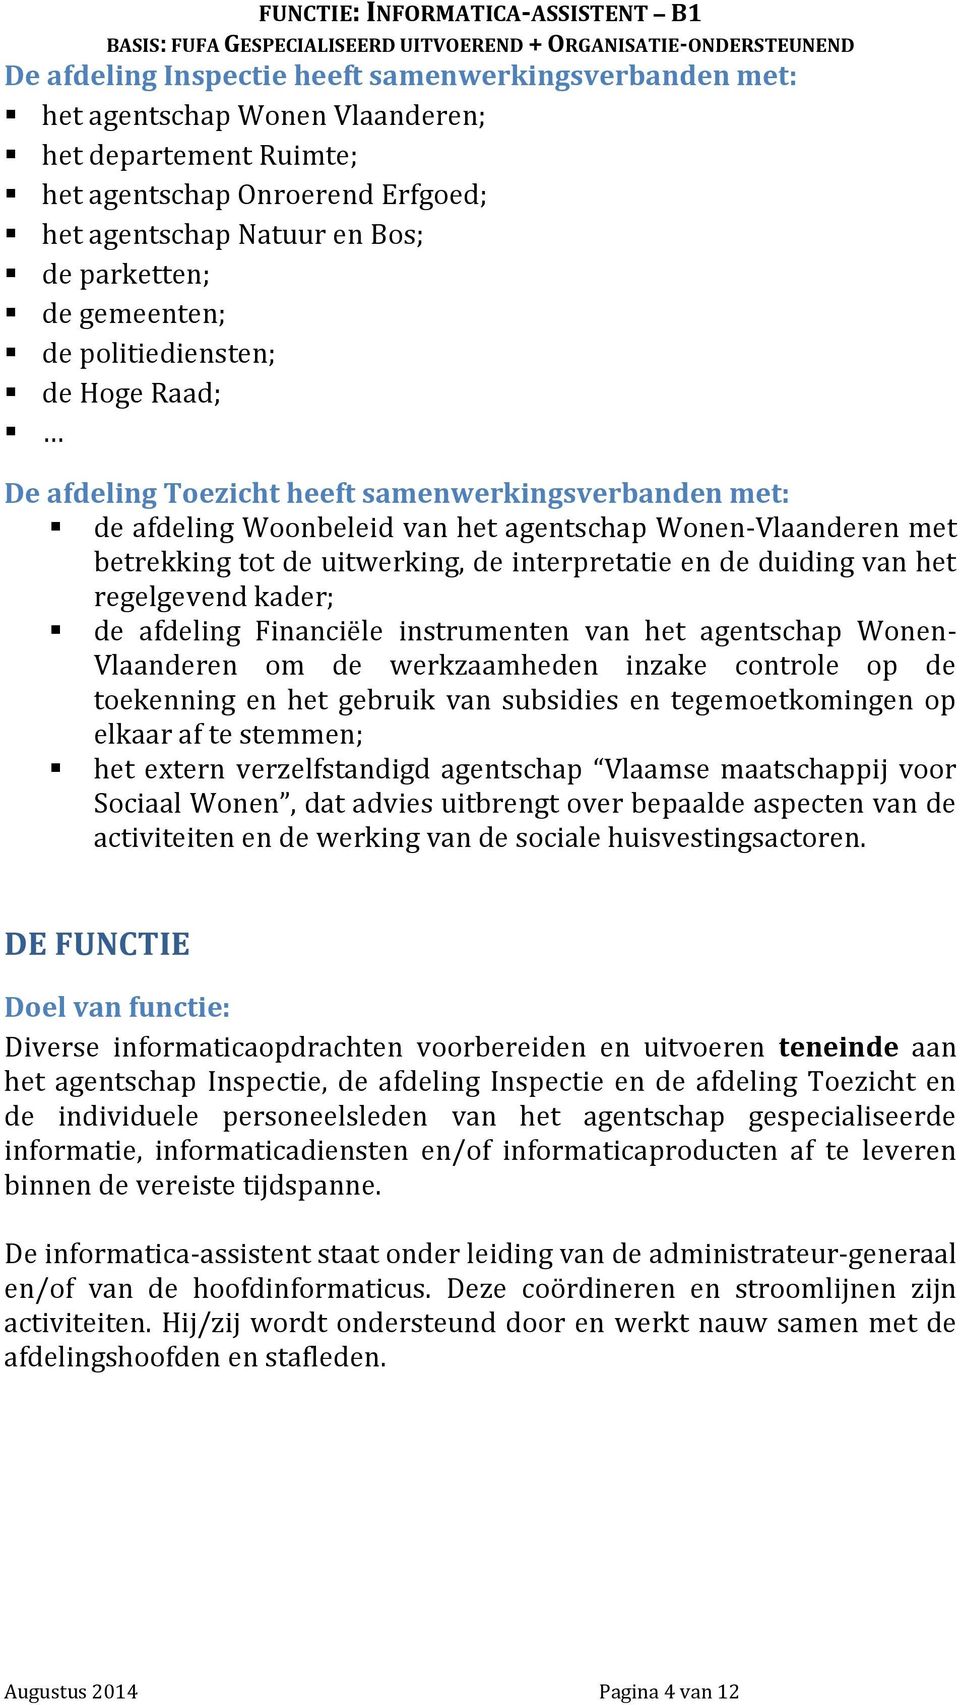 interpretatie en de duiding van het regelgevend kader; de afdeling Financiële instrumenten van het agentschap Wonen- Vlaanderen om de werkzaamheden inzake controle op de toekenning en het gebruik van